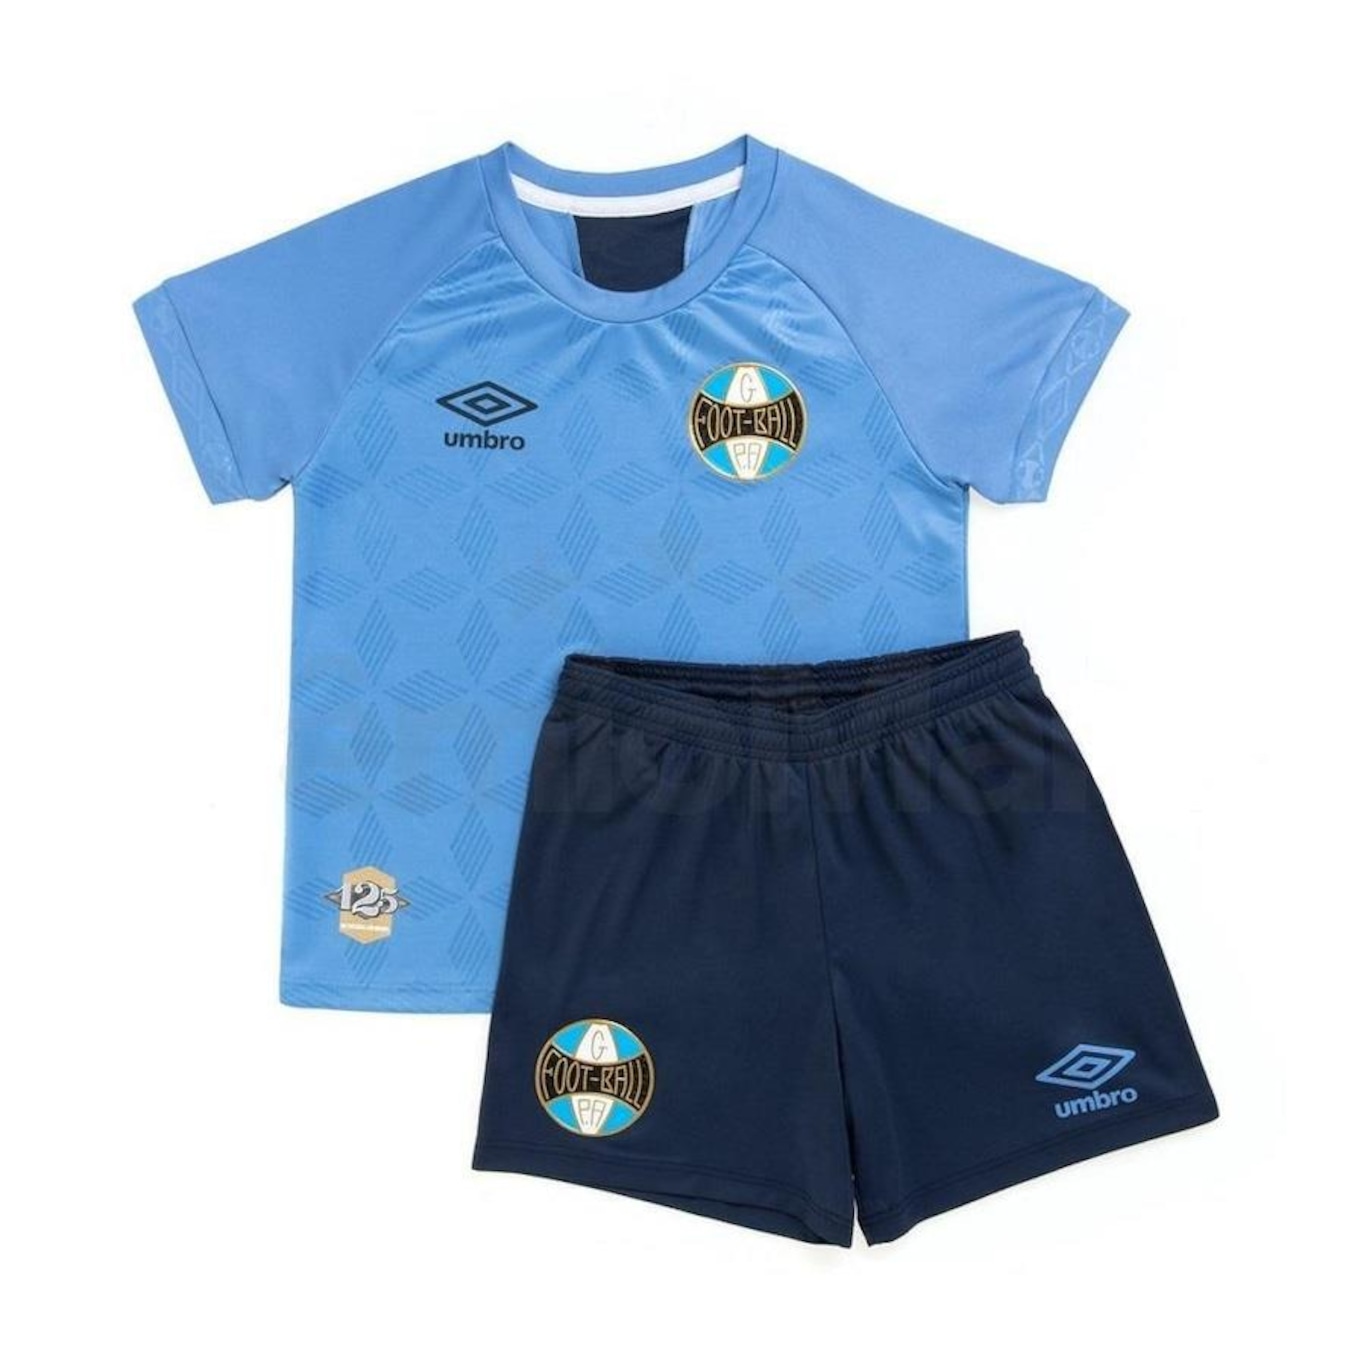 Kit do Grêmio III 2020 Umbro Camisa + Calção - Infantil - Foto 1